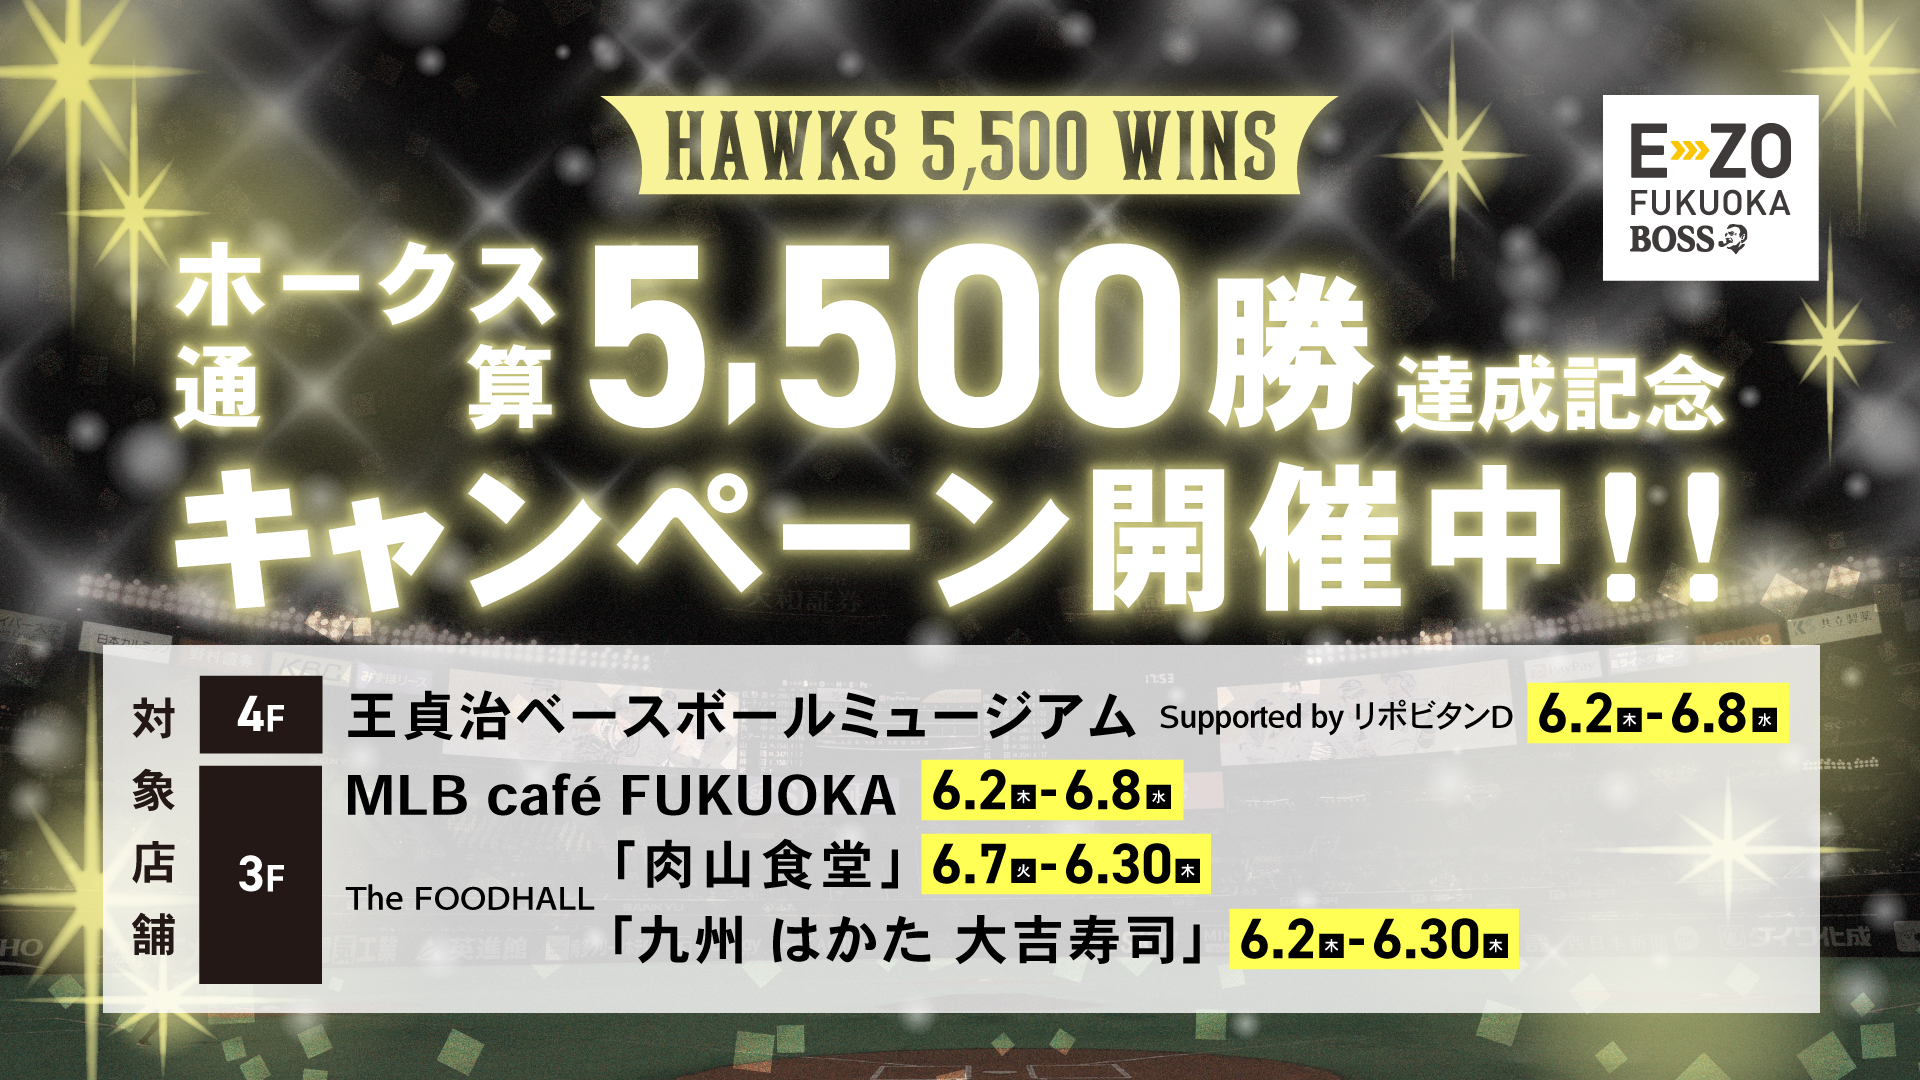 ホークス通算5,500勝達成記念キャンペーン